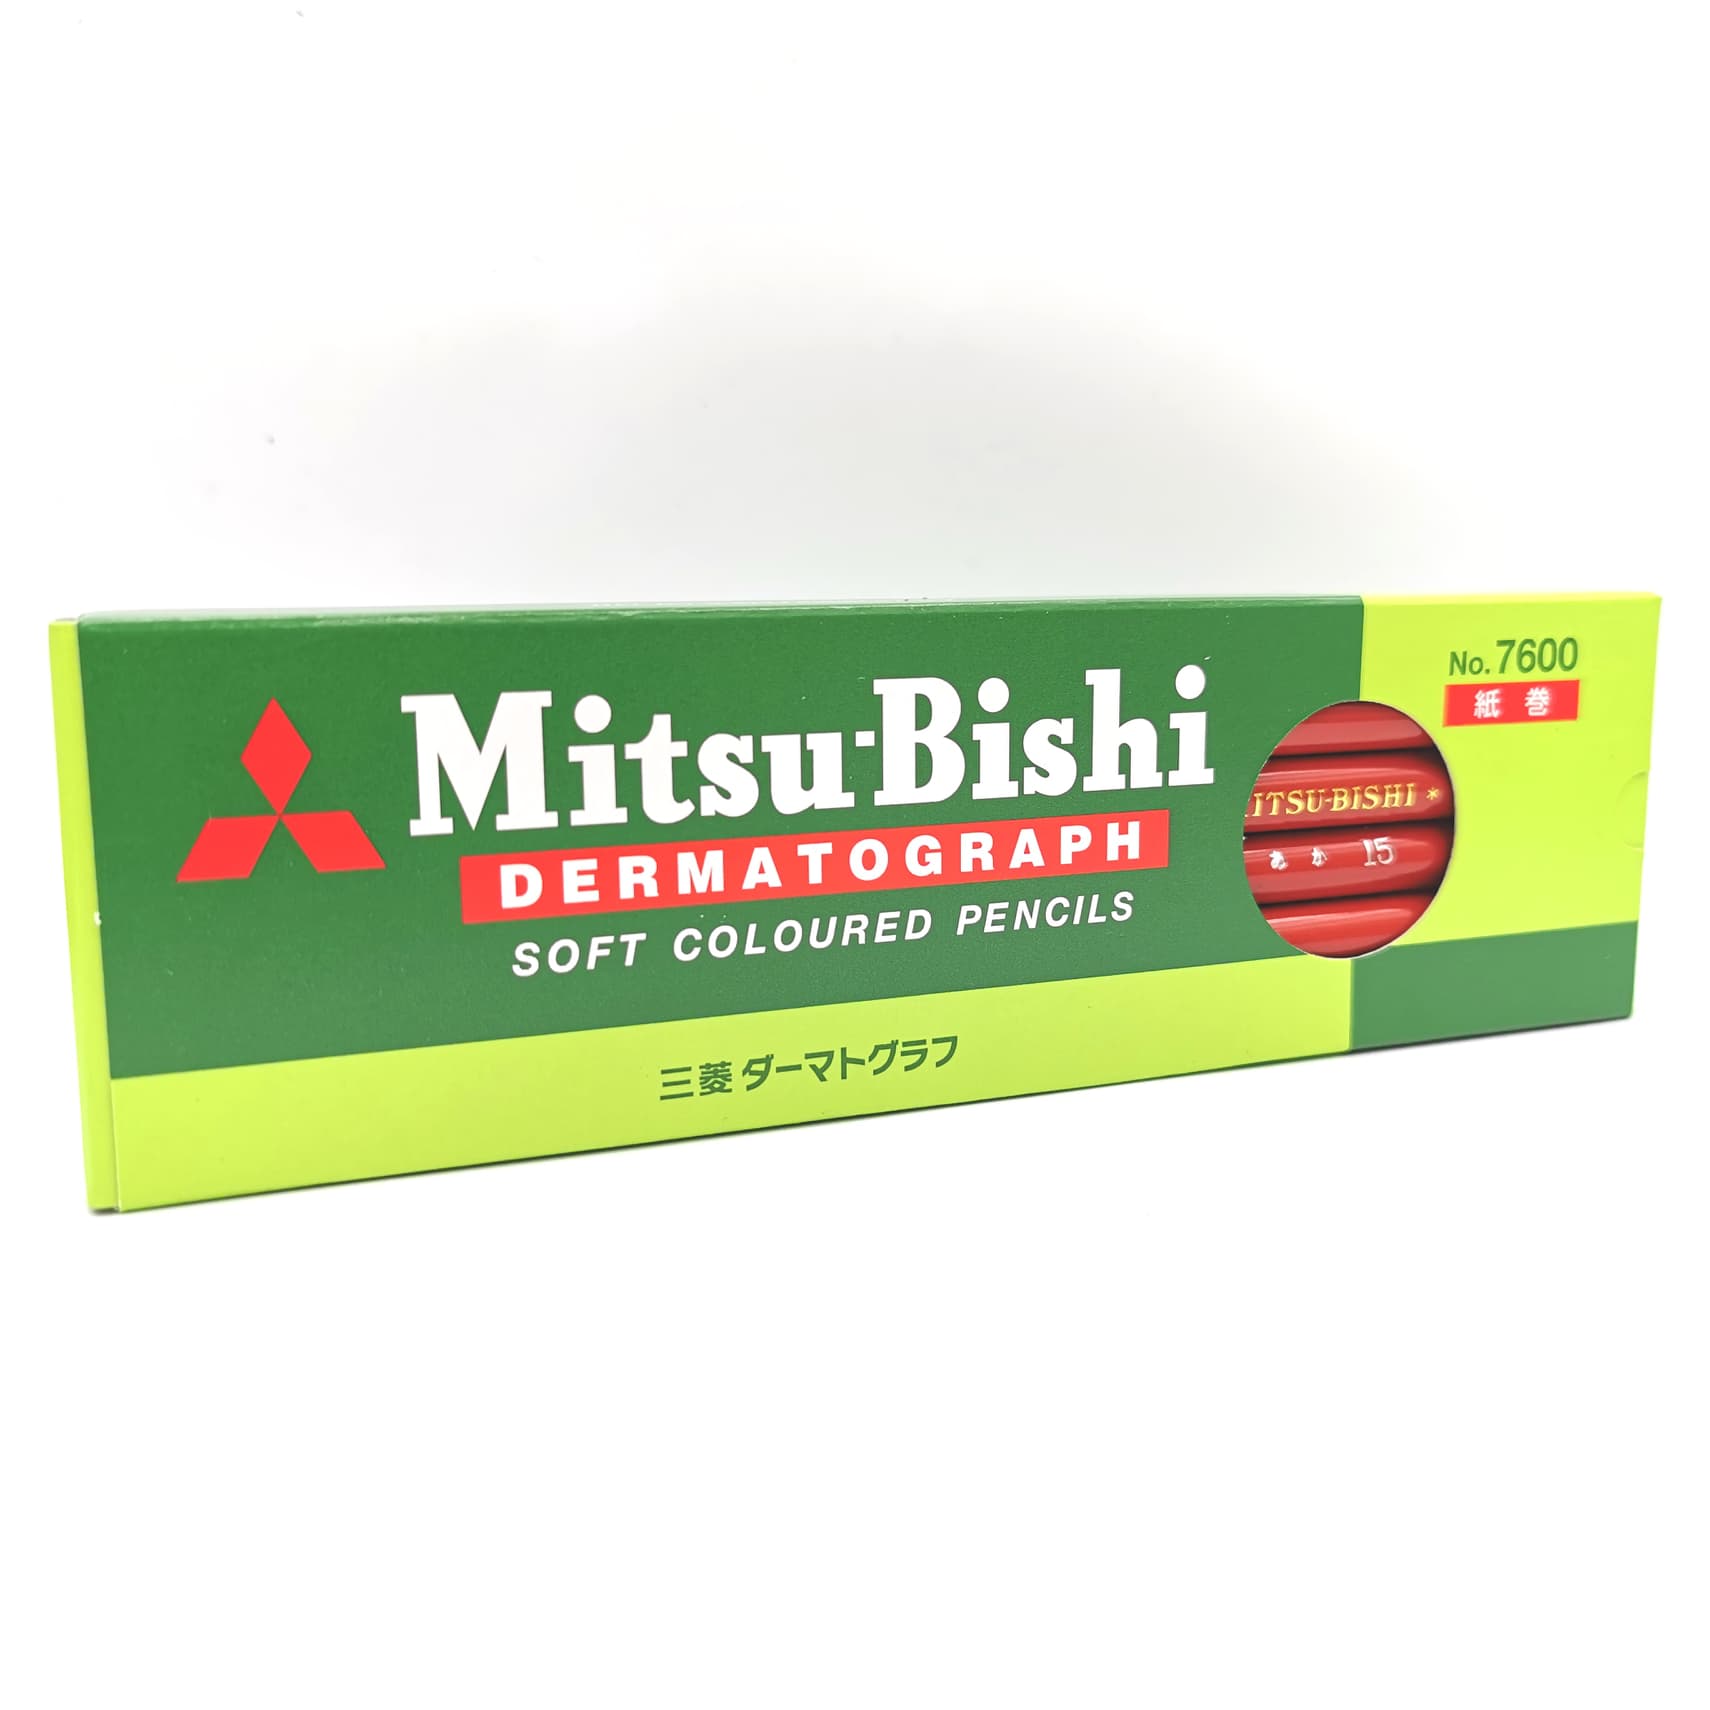 Mitsubishi Dermatograph No.7600 RED ดินสอเขียนกระจก มิตซูบิชิ 7600 แดง (1กล่อง/12ด้าม)